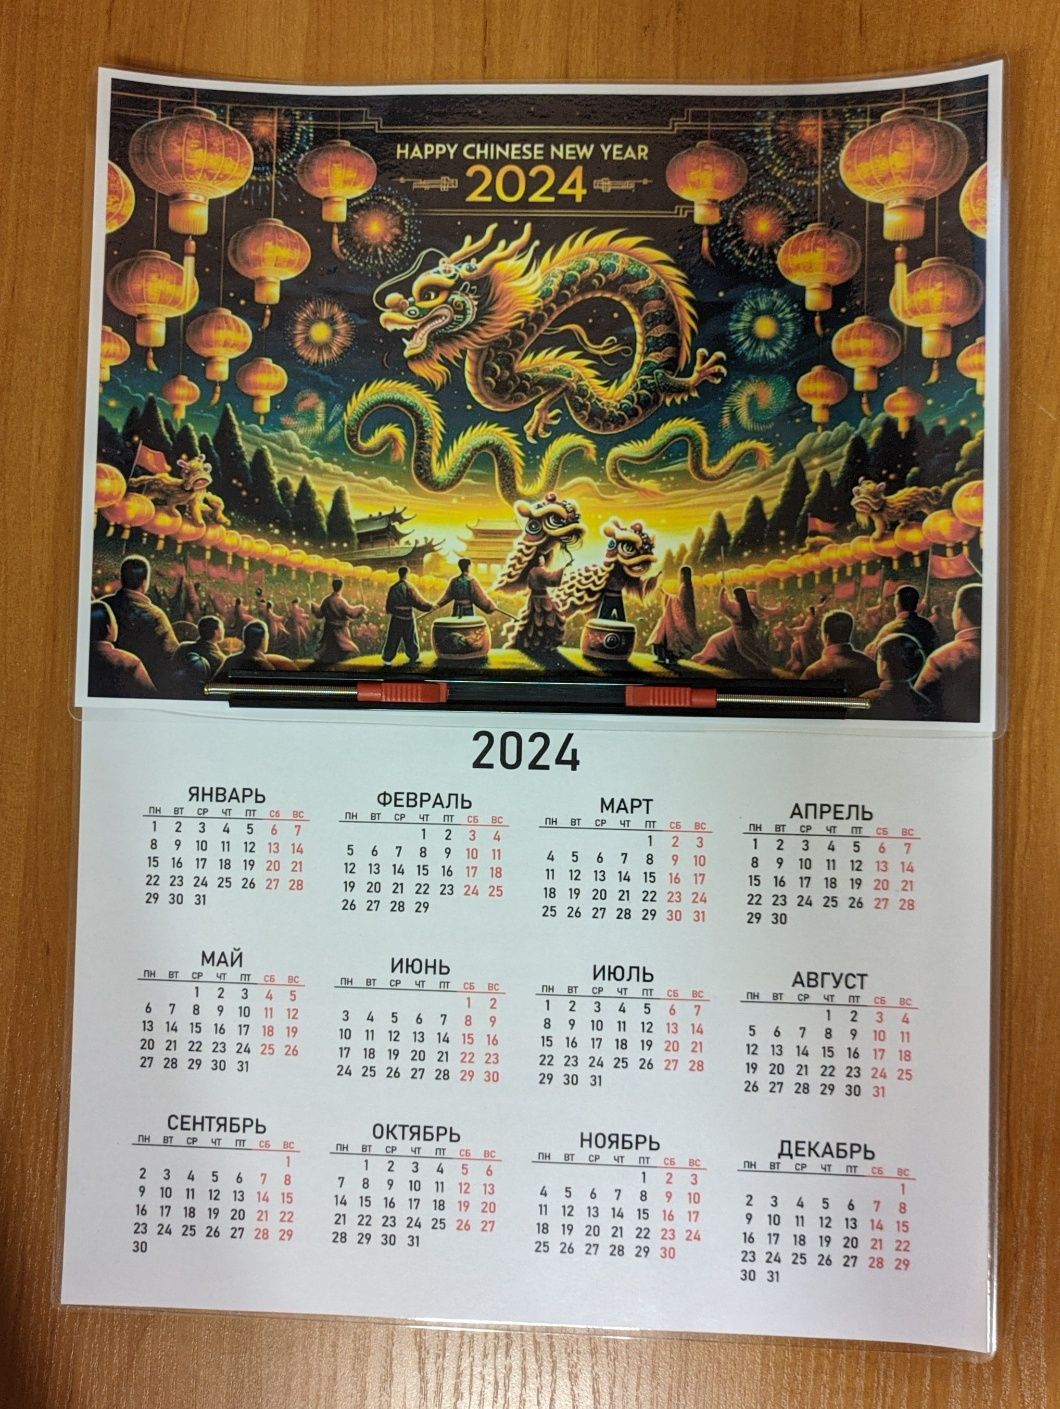 Цветной календарь на 2024 год дракона, в восточном китайском стиле.